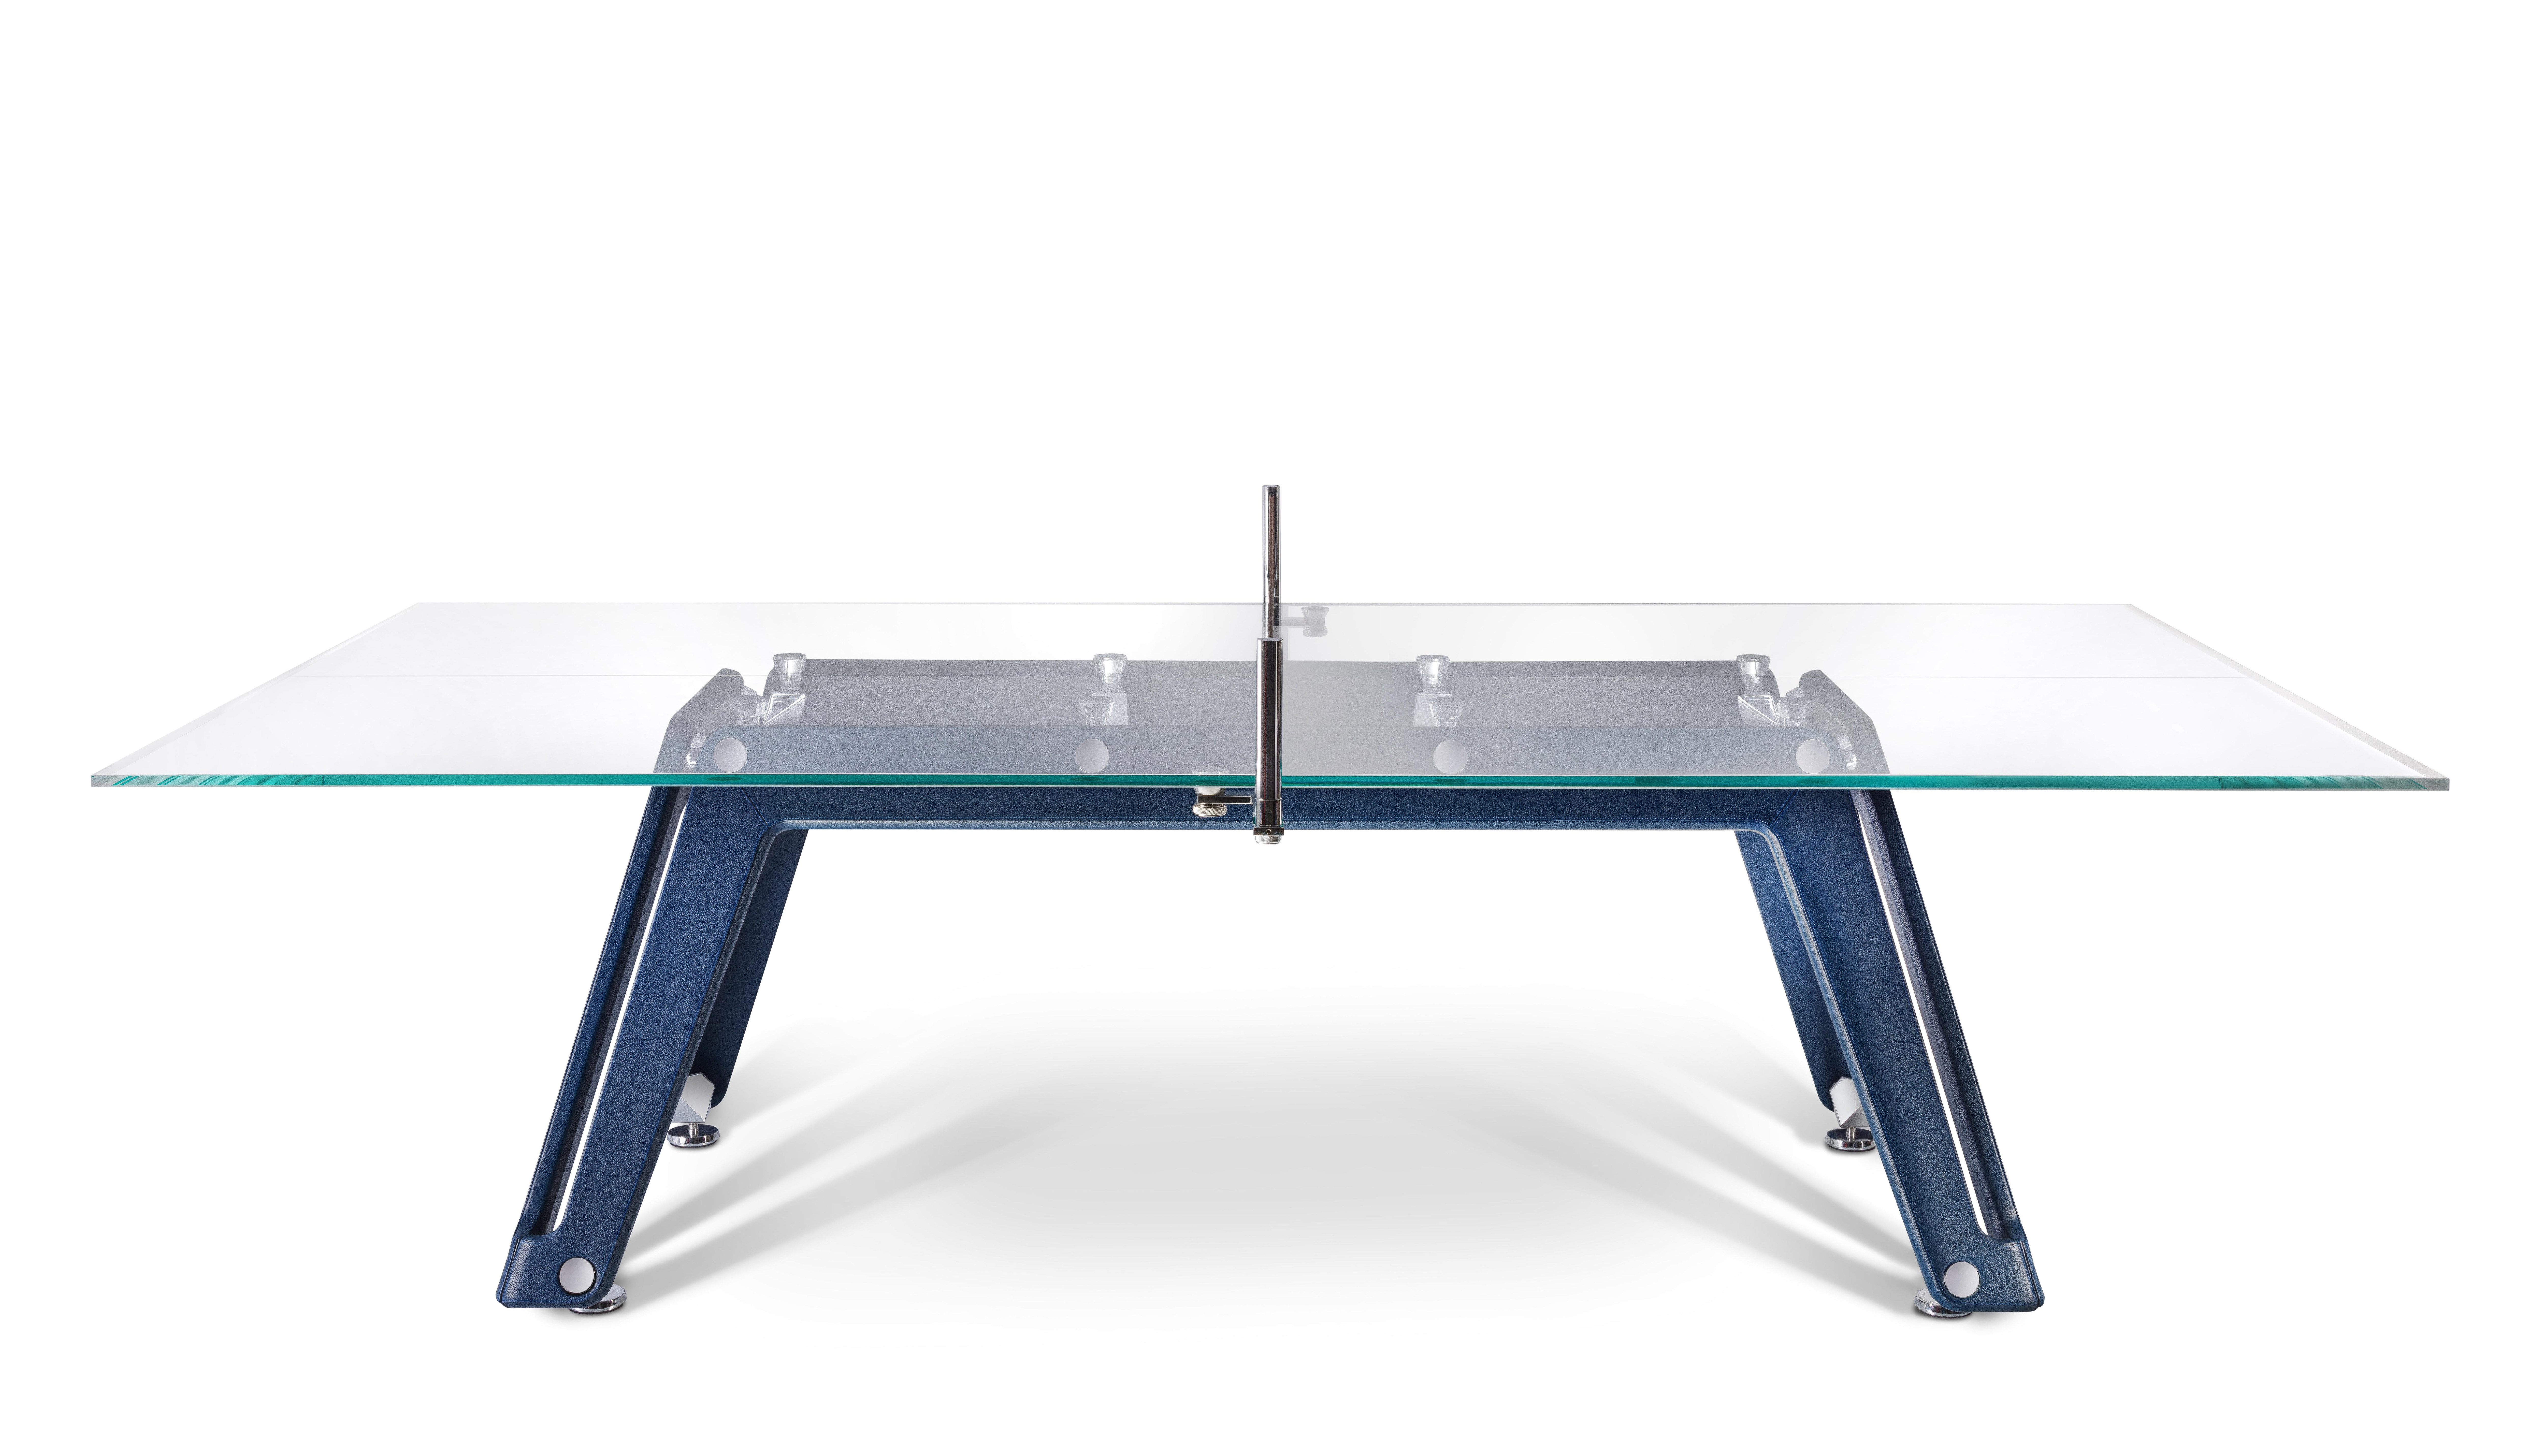 La table de ping-pong en cuir Lungolinea est une vision, une volonté de réinterpréter les classiques avec ambition. Il démontre la sophistication et l'ingéniosité du design et de l'artisanat italiens dans le domaine du tennis de table. 

Cette